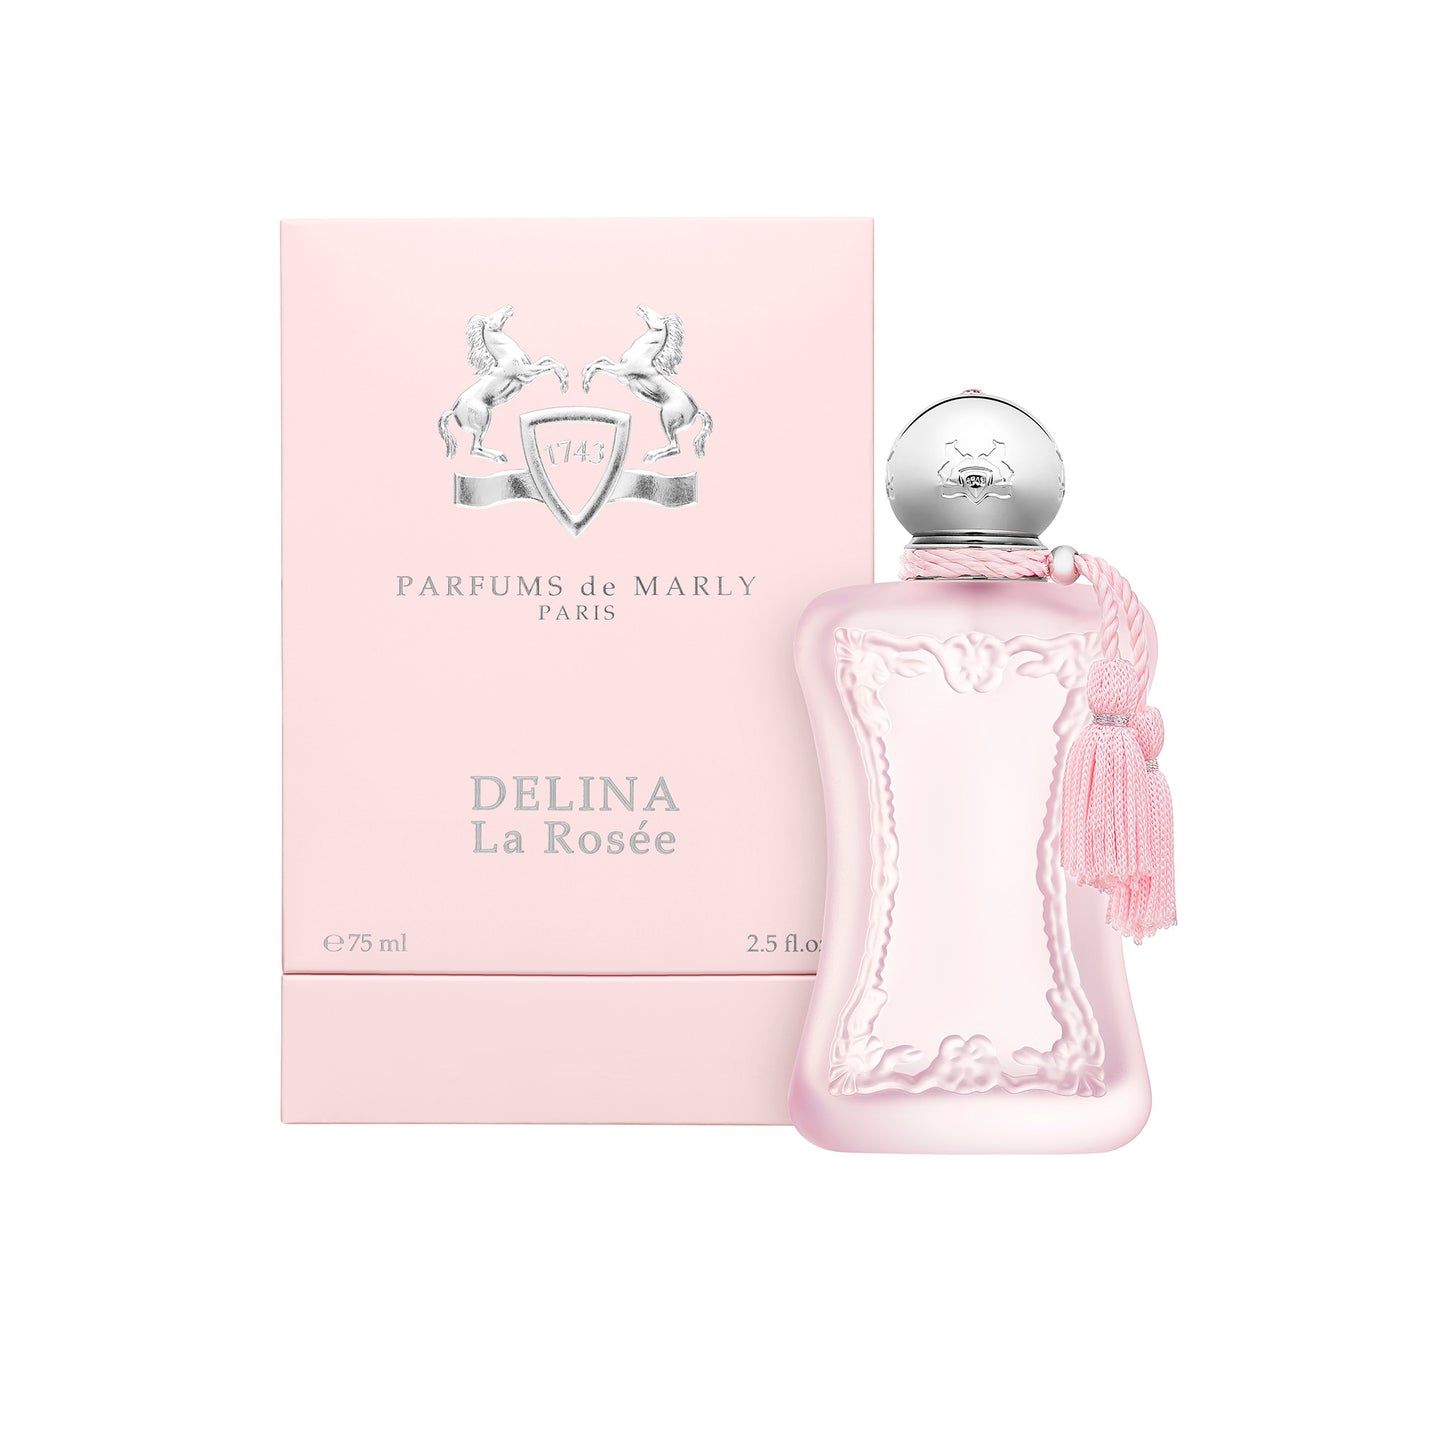 DELINA LA ROSEE 1.2ml Sample Vial - Eau de Parfum